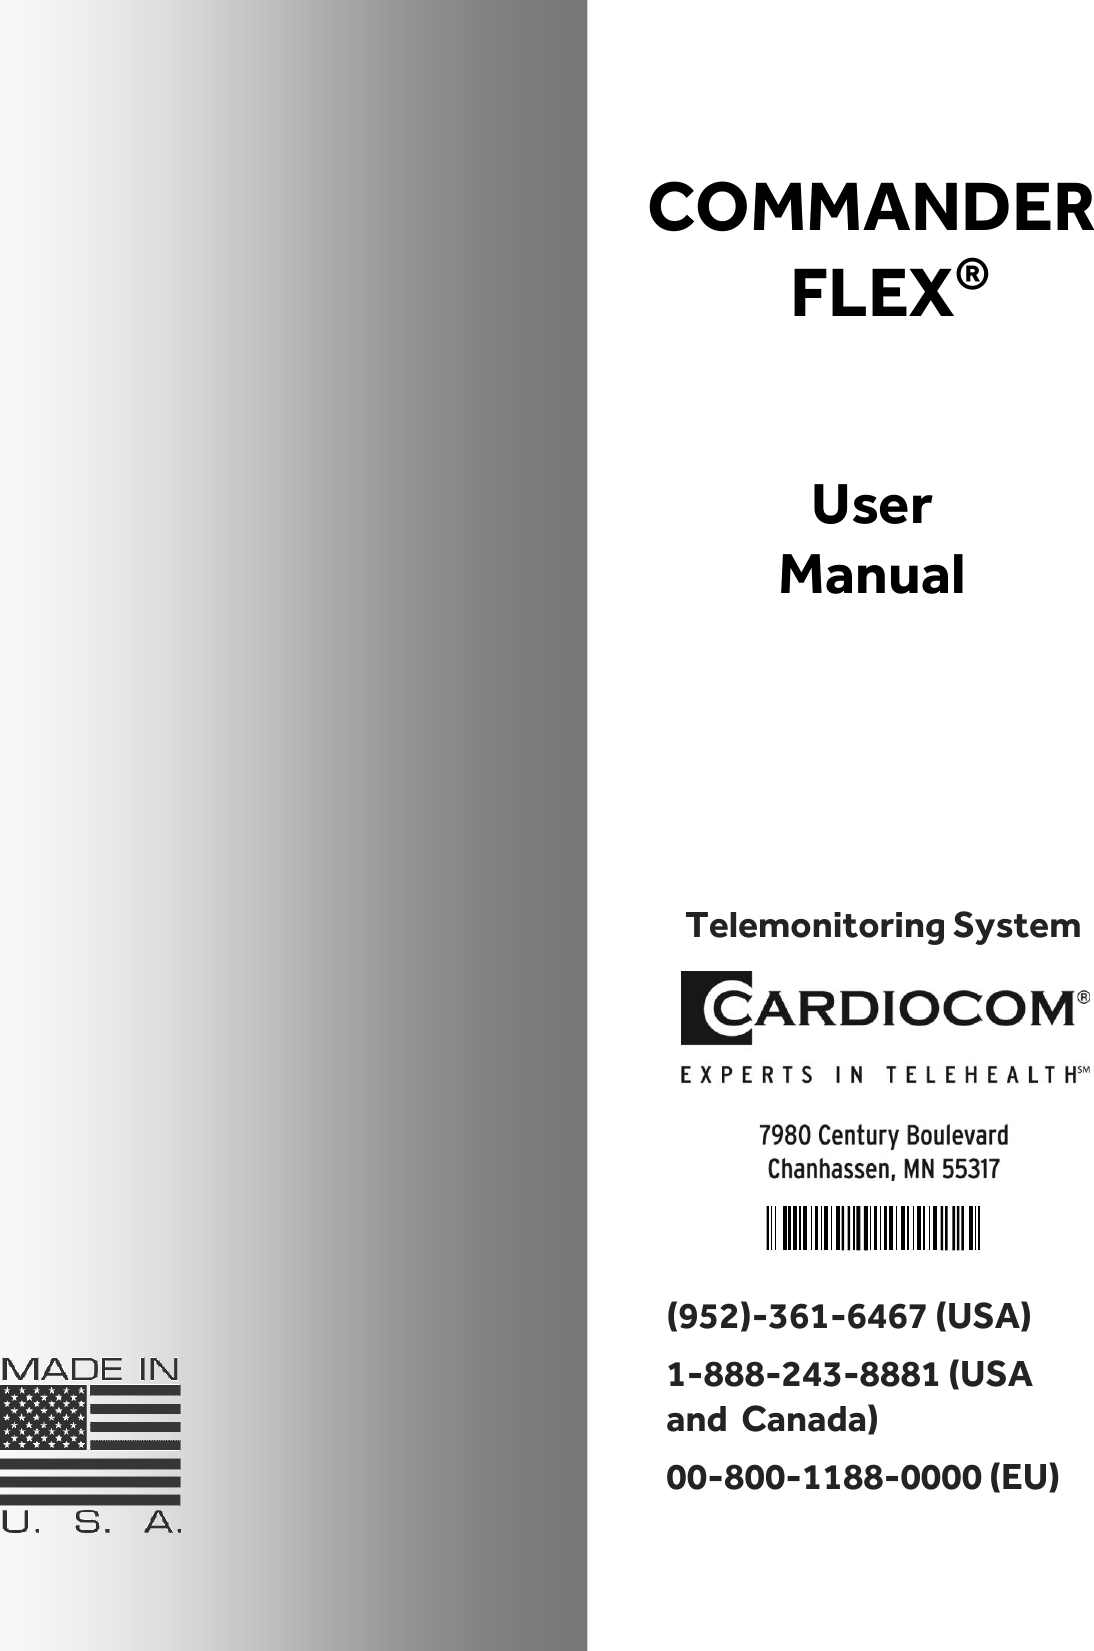 Telemonitoring System     COMMANDER FLEX®   User Manual  (952)-361-6467 (USA) 1-888-243-8881 (USA  and  Canada) 00-800-1188-0000 (EU) 